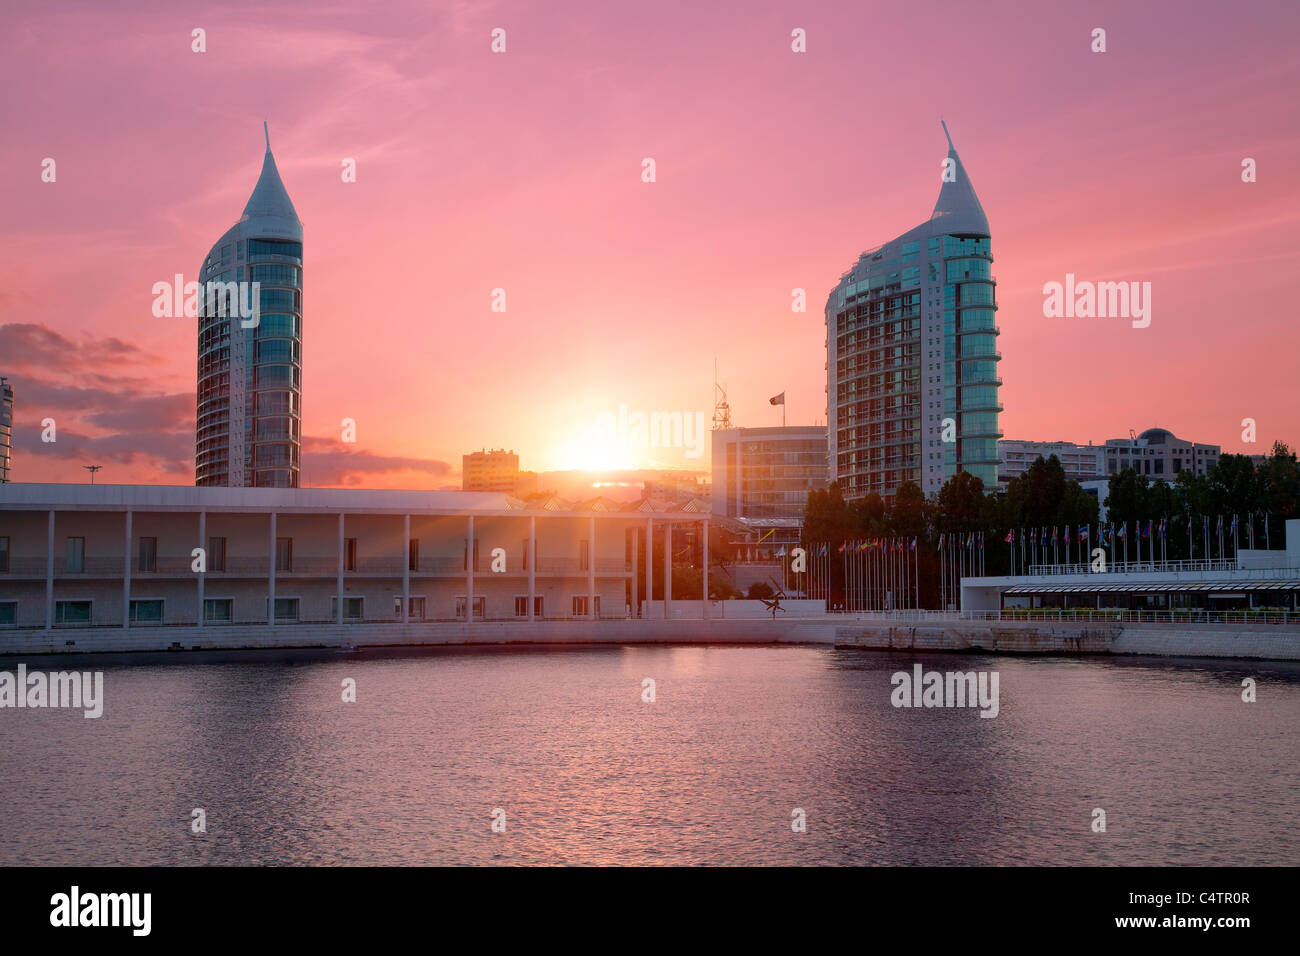 L'Europe, Portugal, Lisbonne, Sao Gabriel et Sao Rafael Twin Towers au coucher du soleil Banque D'Images